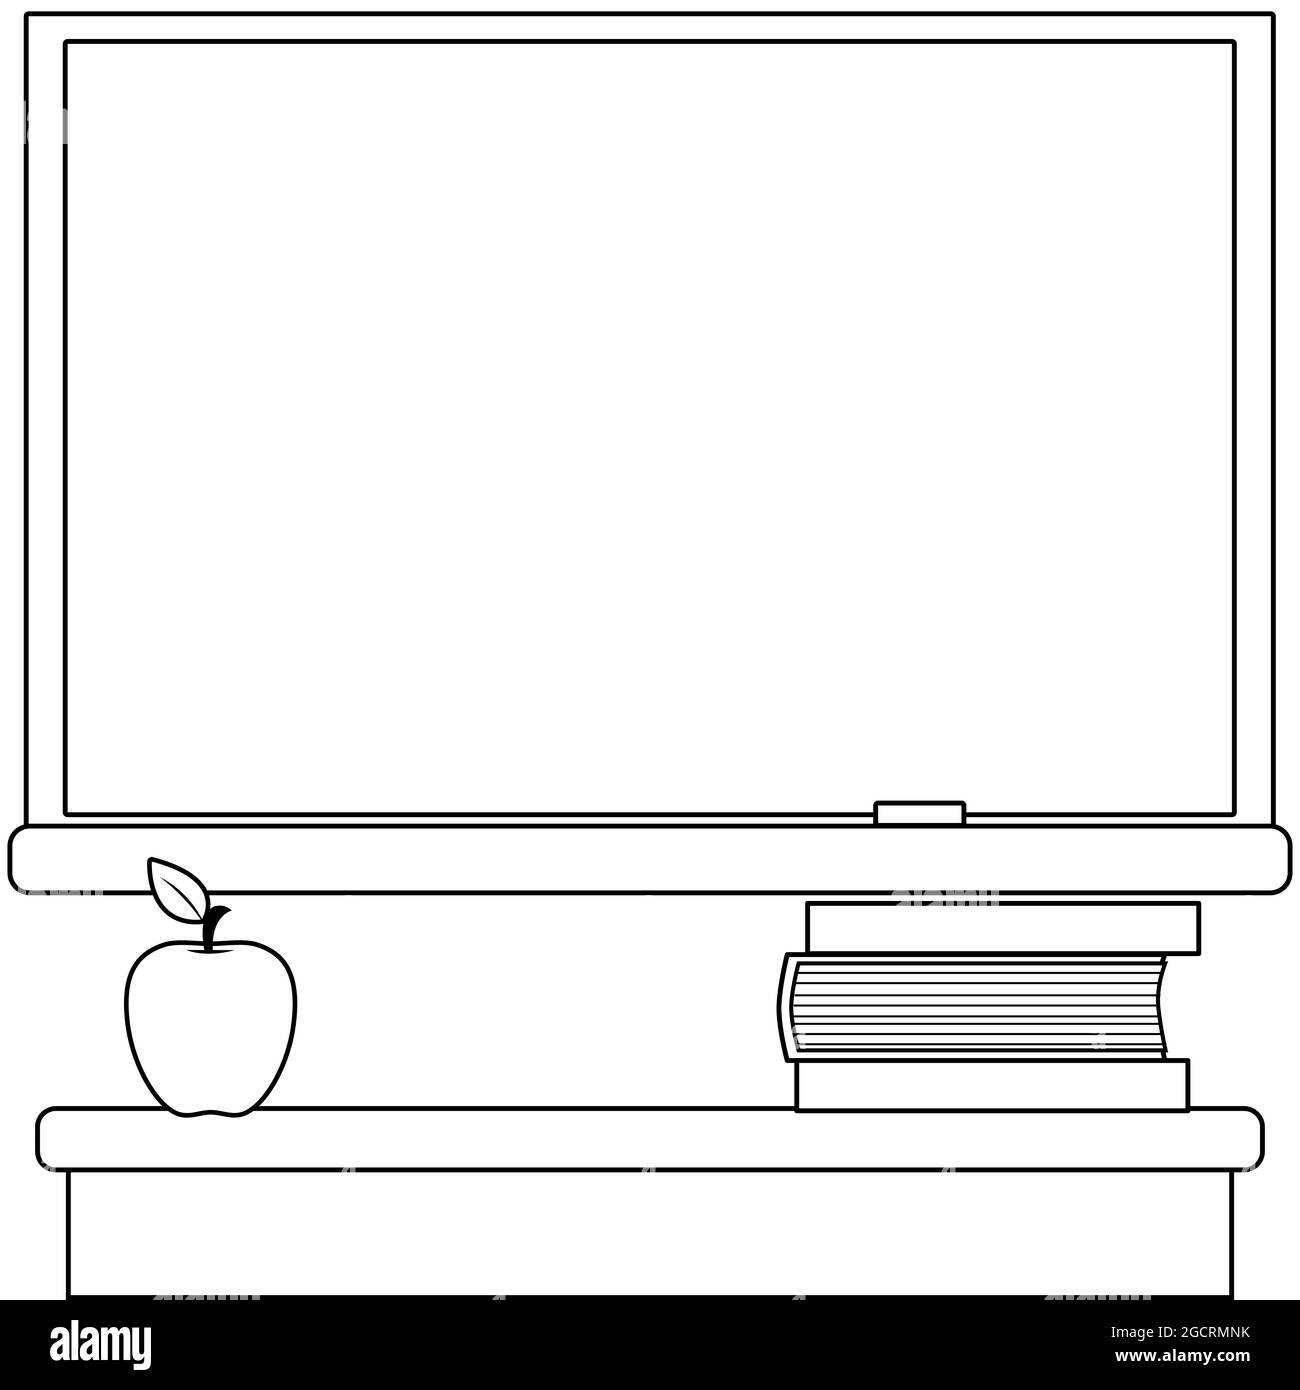 Aula escolar con pizarra, escritorio de maestro, libros y manzana. Página para  colorear en blanco y negro Fotografía de stock - Alamy